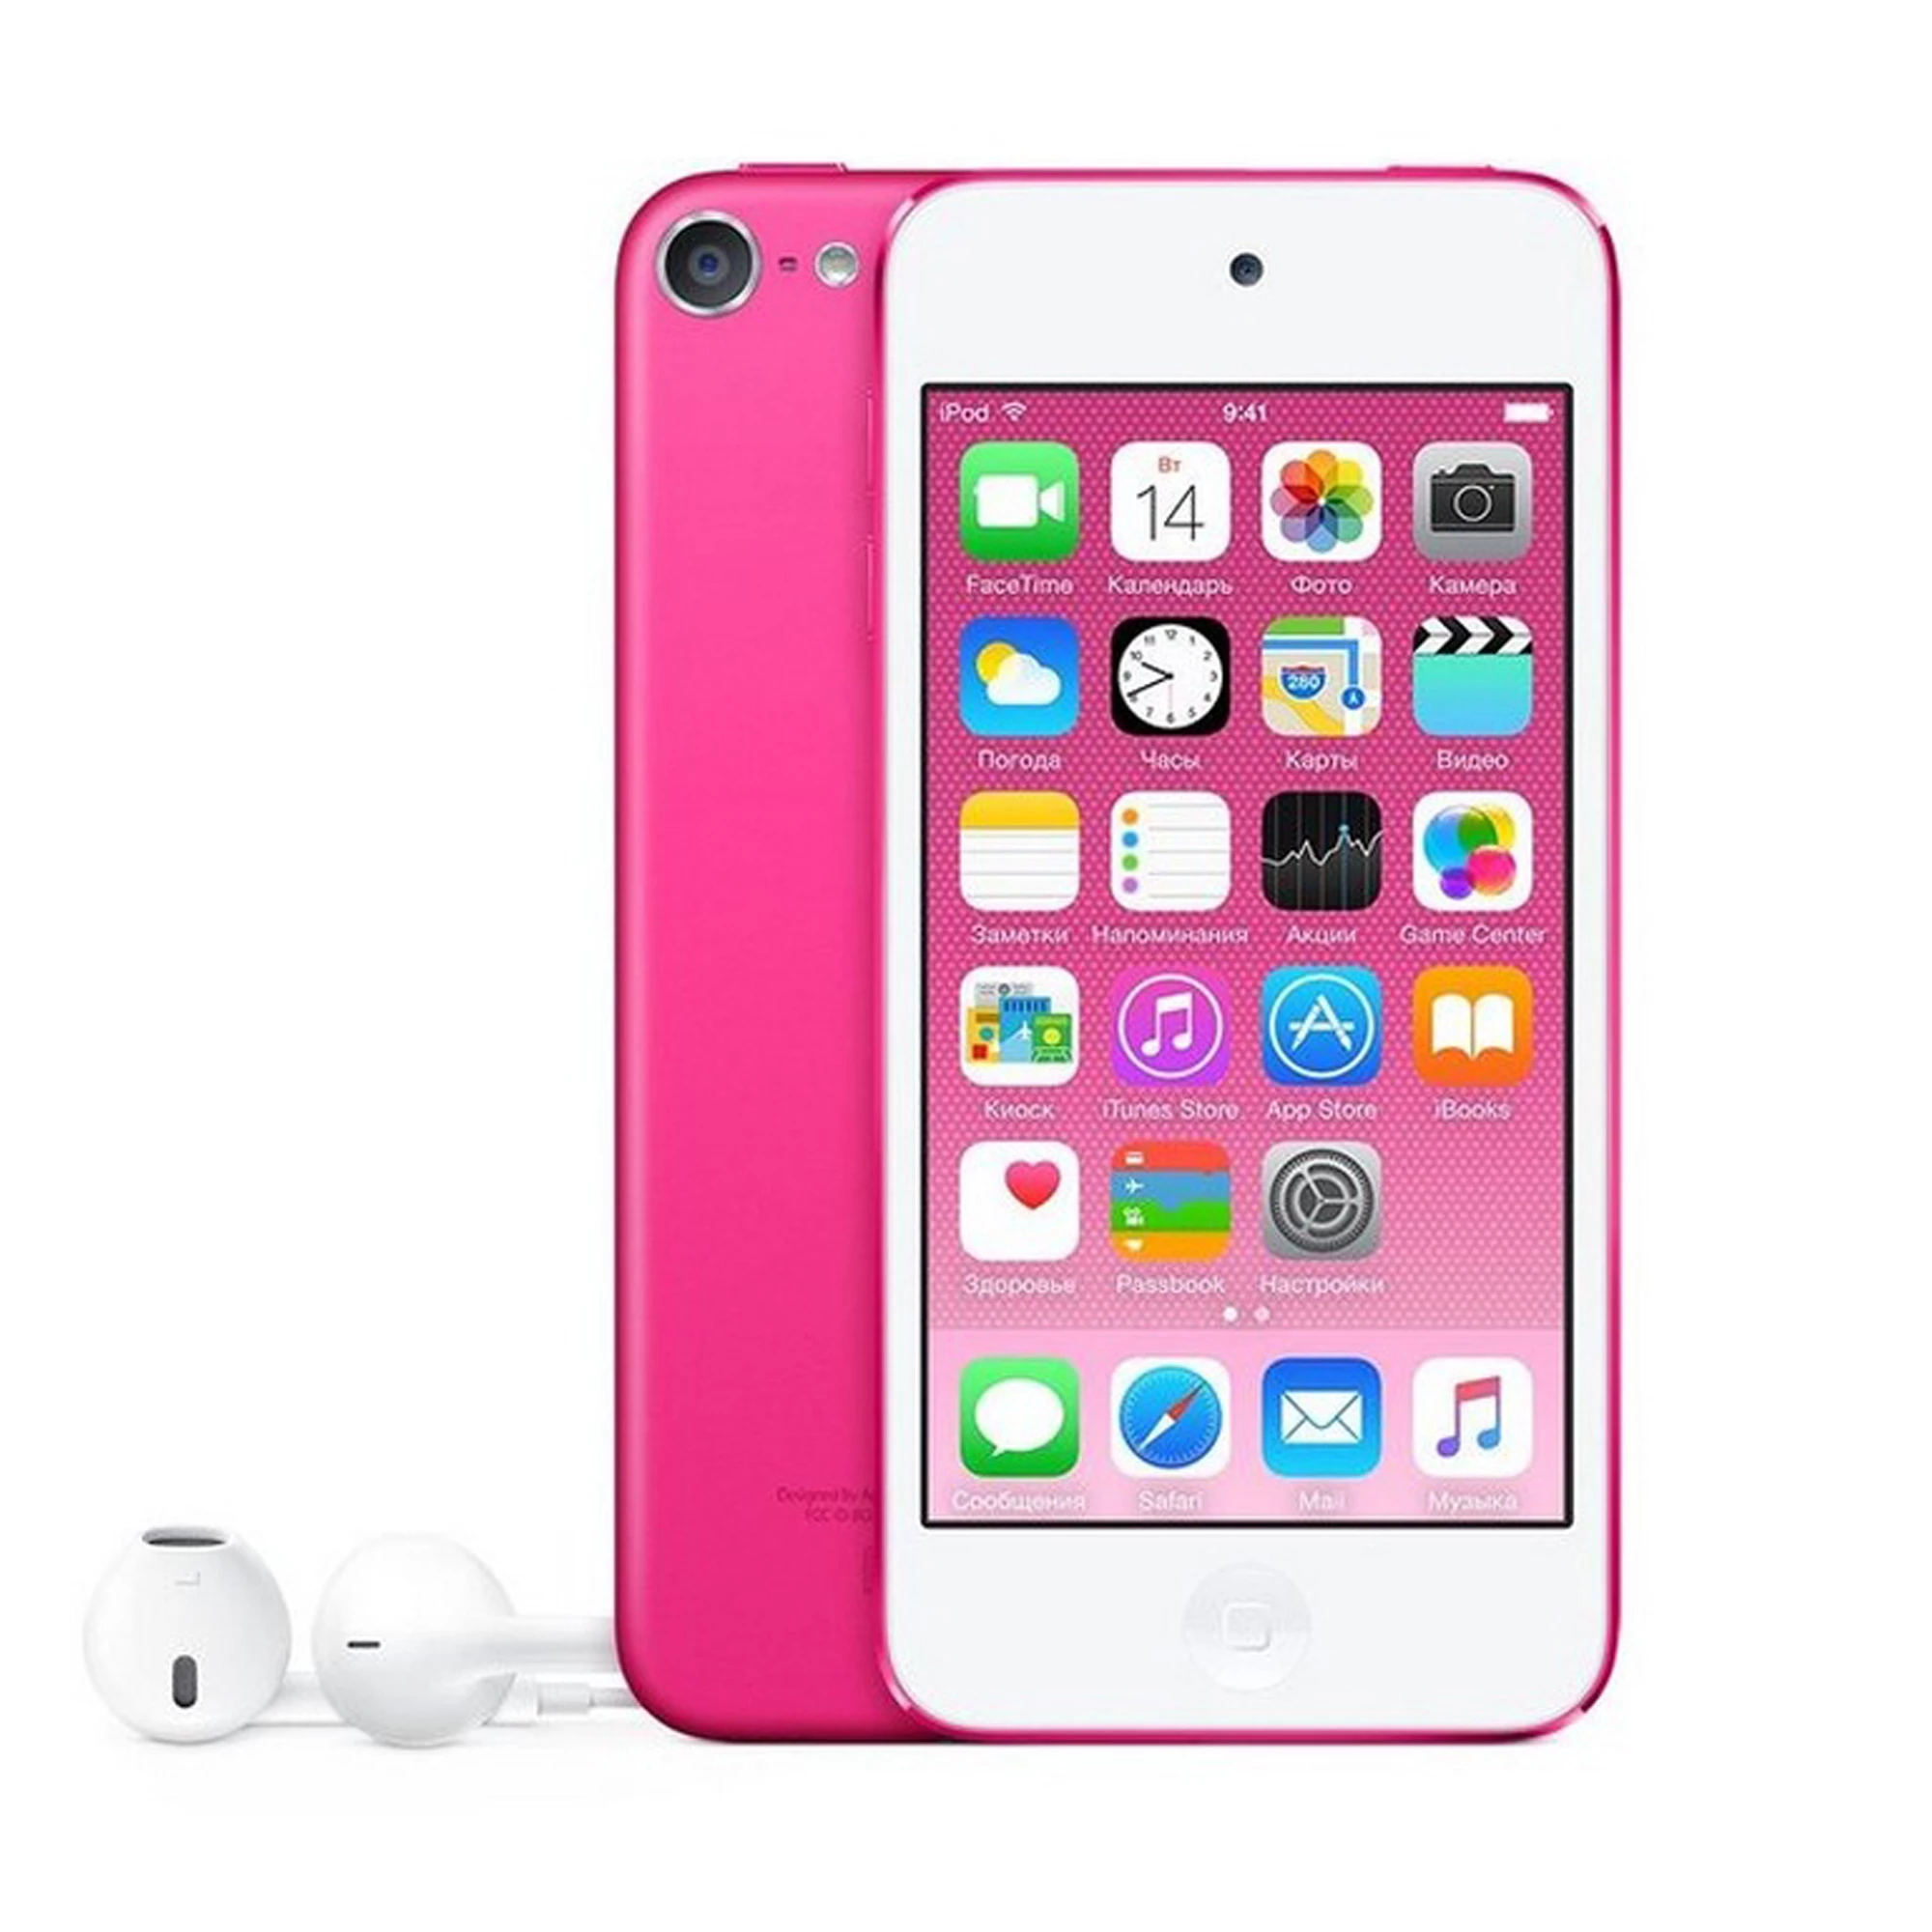 iPod touch 6Gen 16GB Pink (MKGX2)